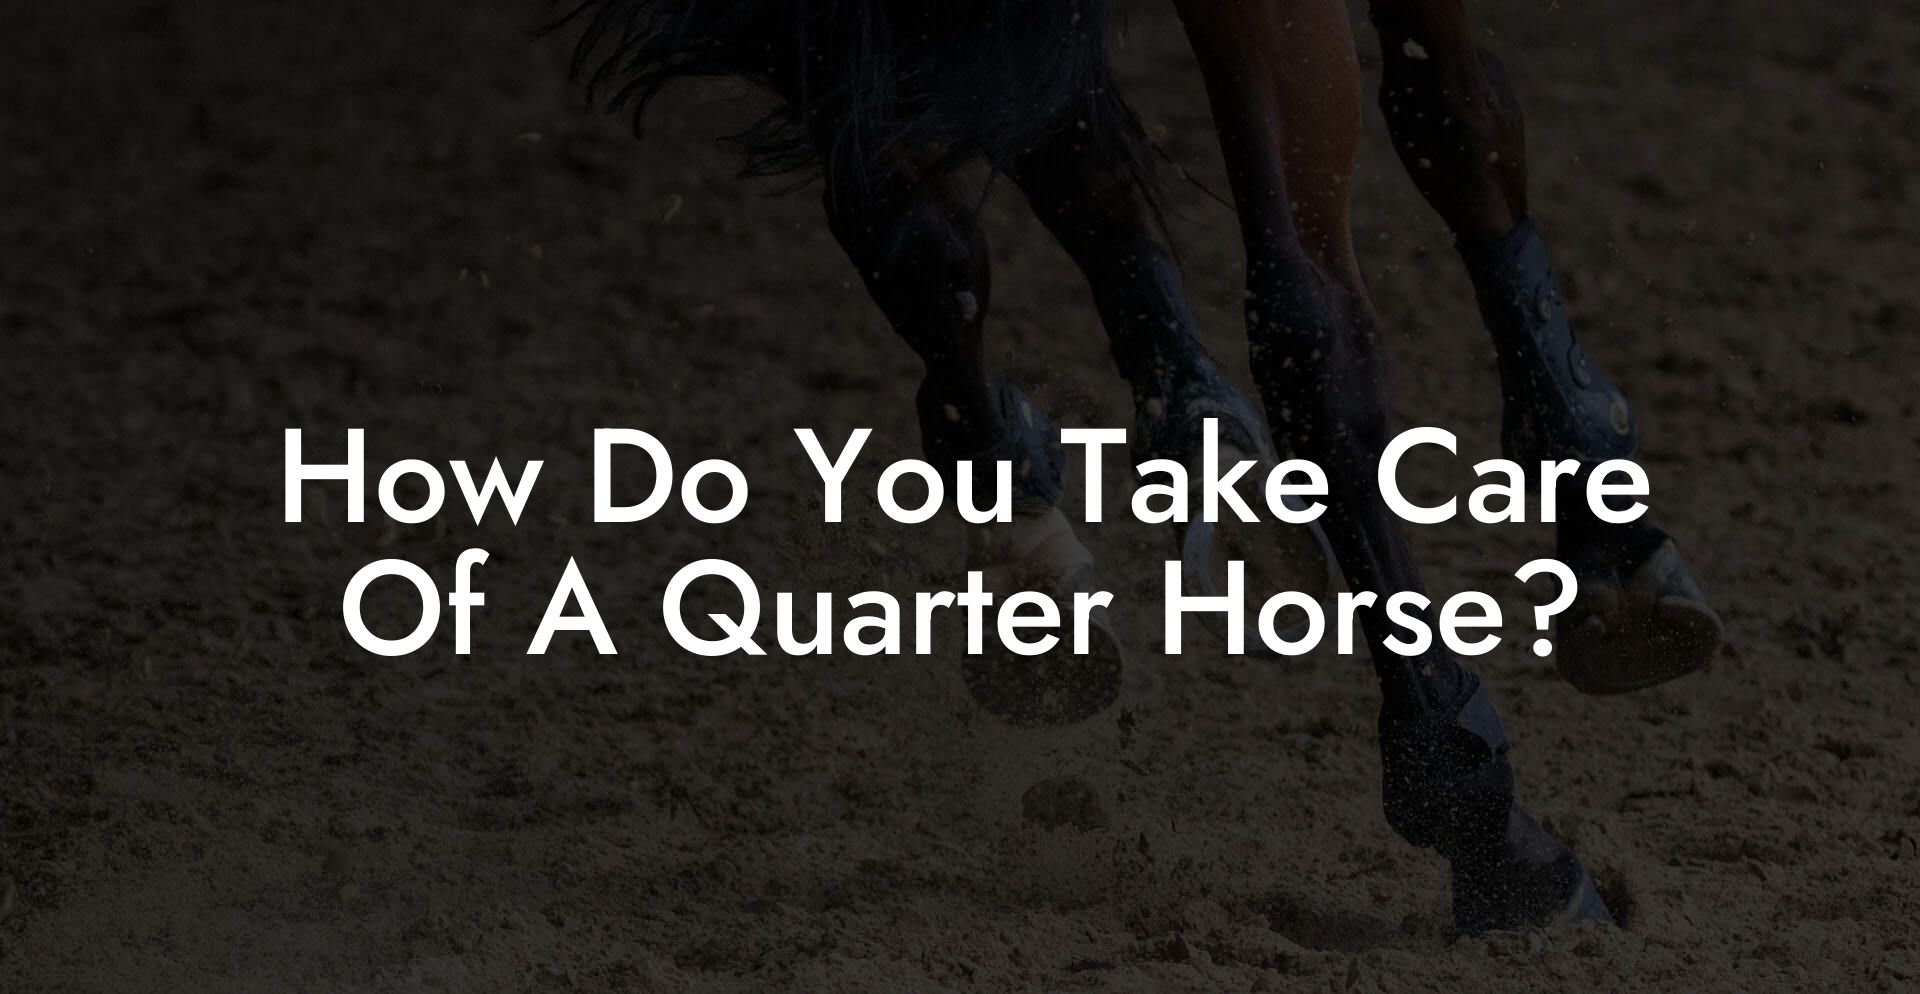 How Do You Take Care Of A Quarter Horse?